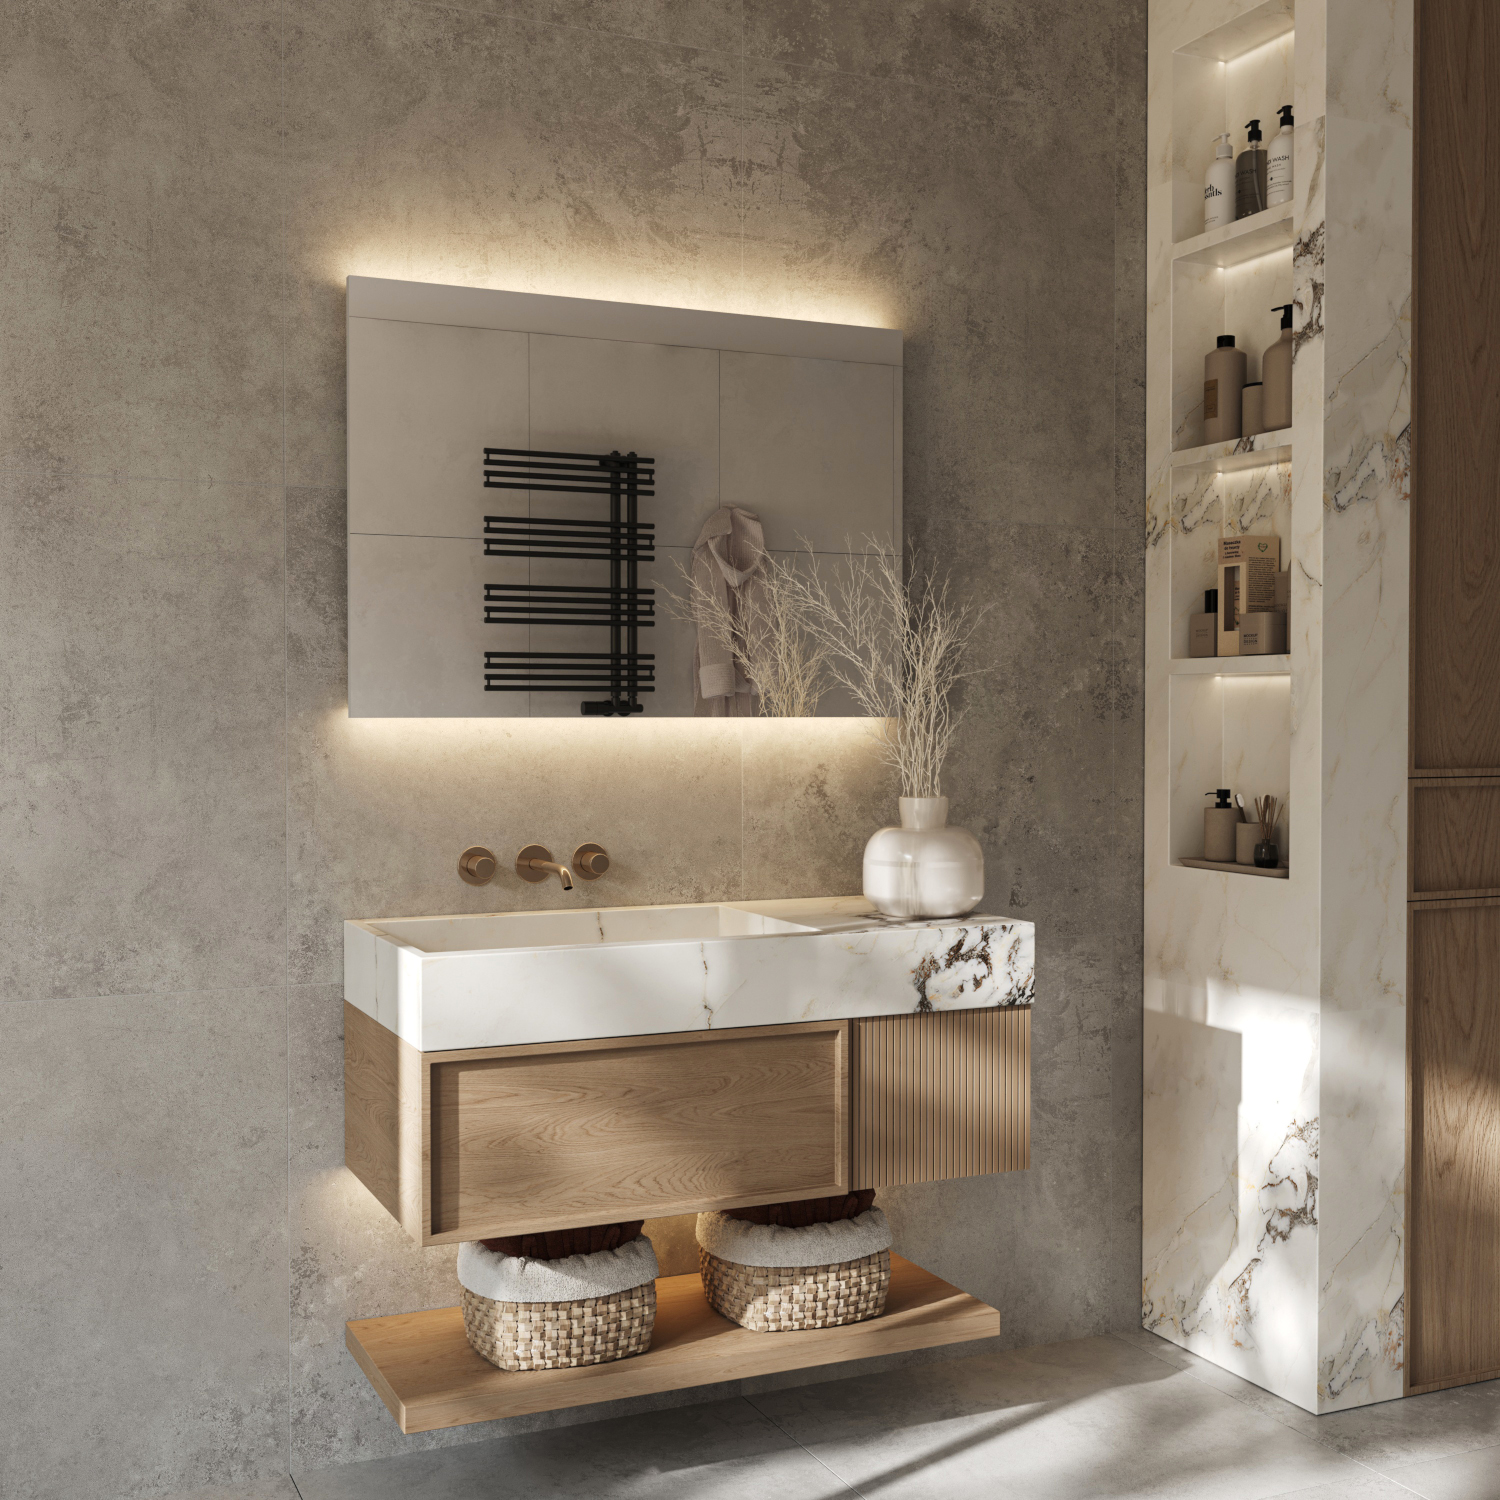 Bij deze stijlvolle badkamer spiegel schijnt de verlichting vanachter de spiegel fraai en sfeervol over de wand